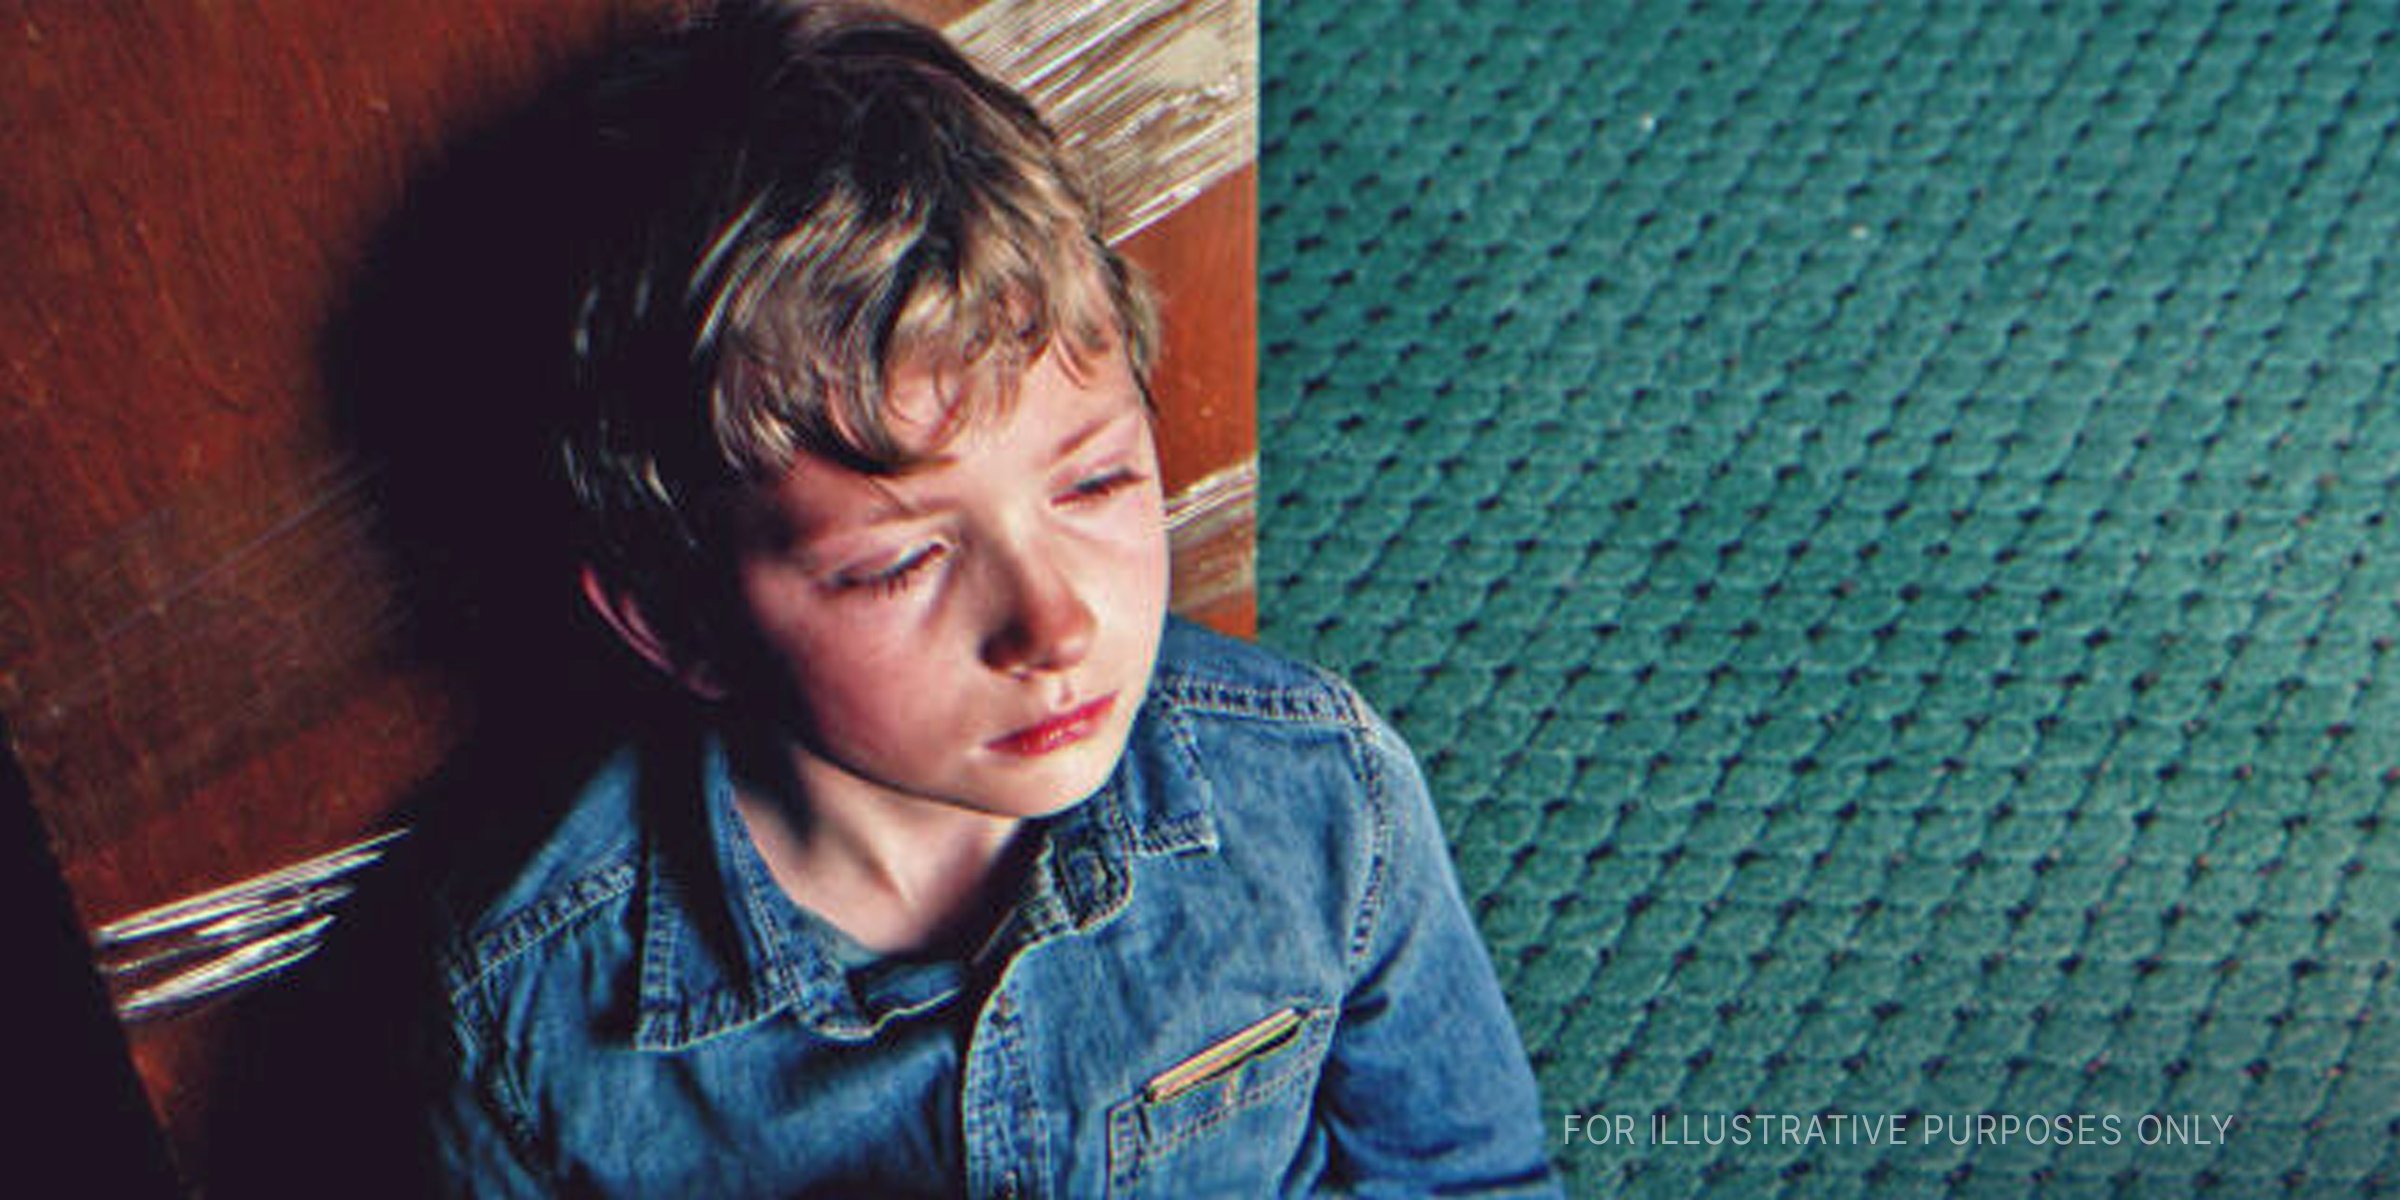 Trauriger Junge sitzt im Sand | Quelle: Shutterstock